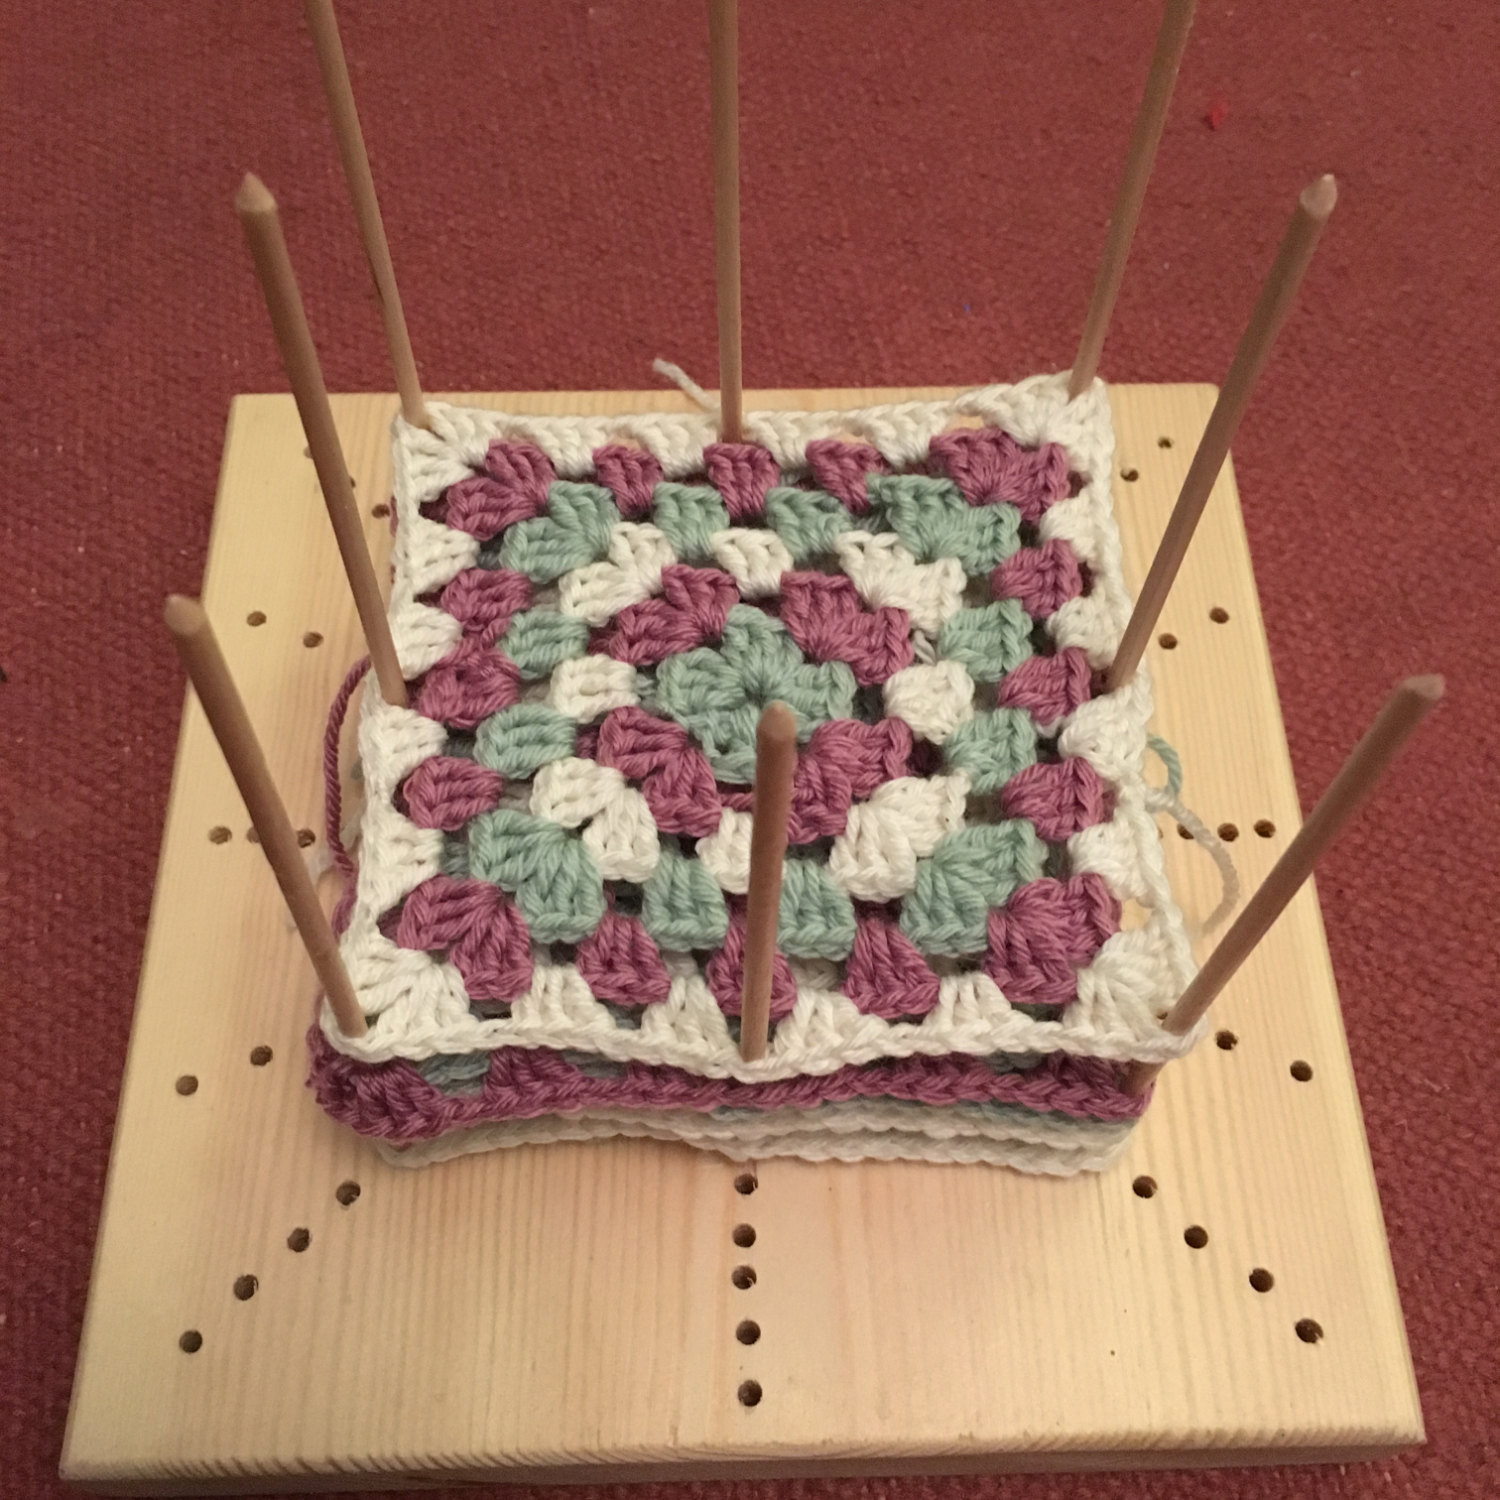 Crochet Blocking Board - I Like Crochet